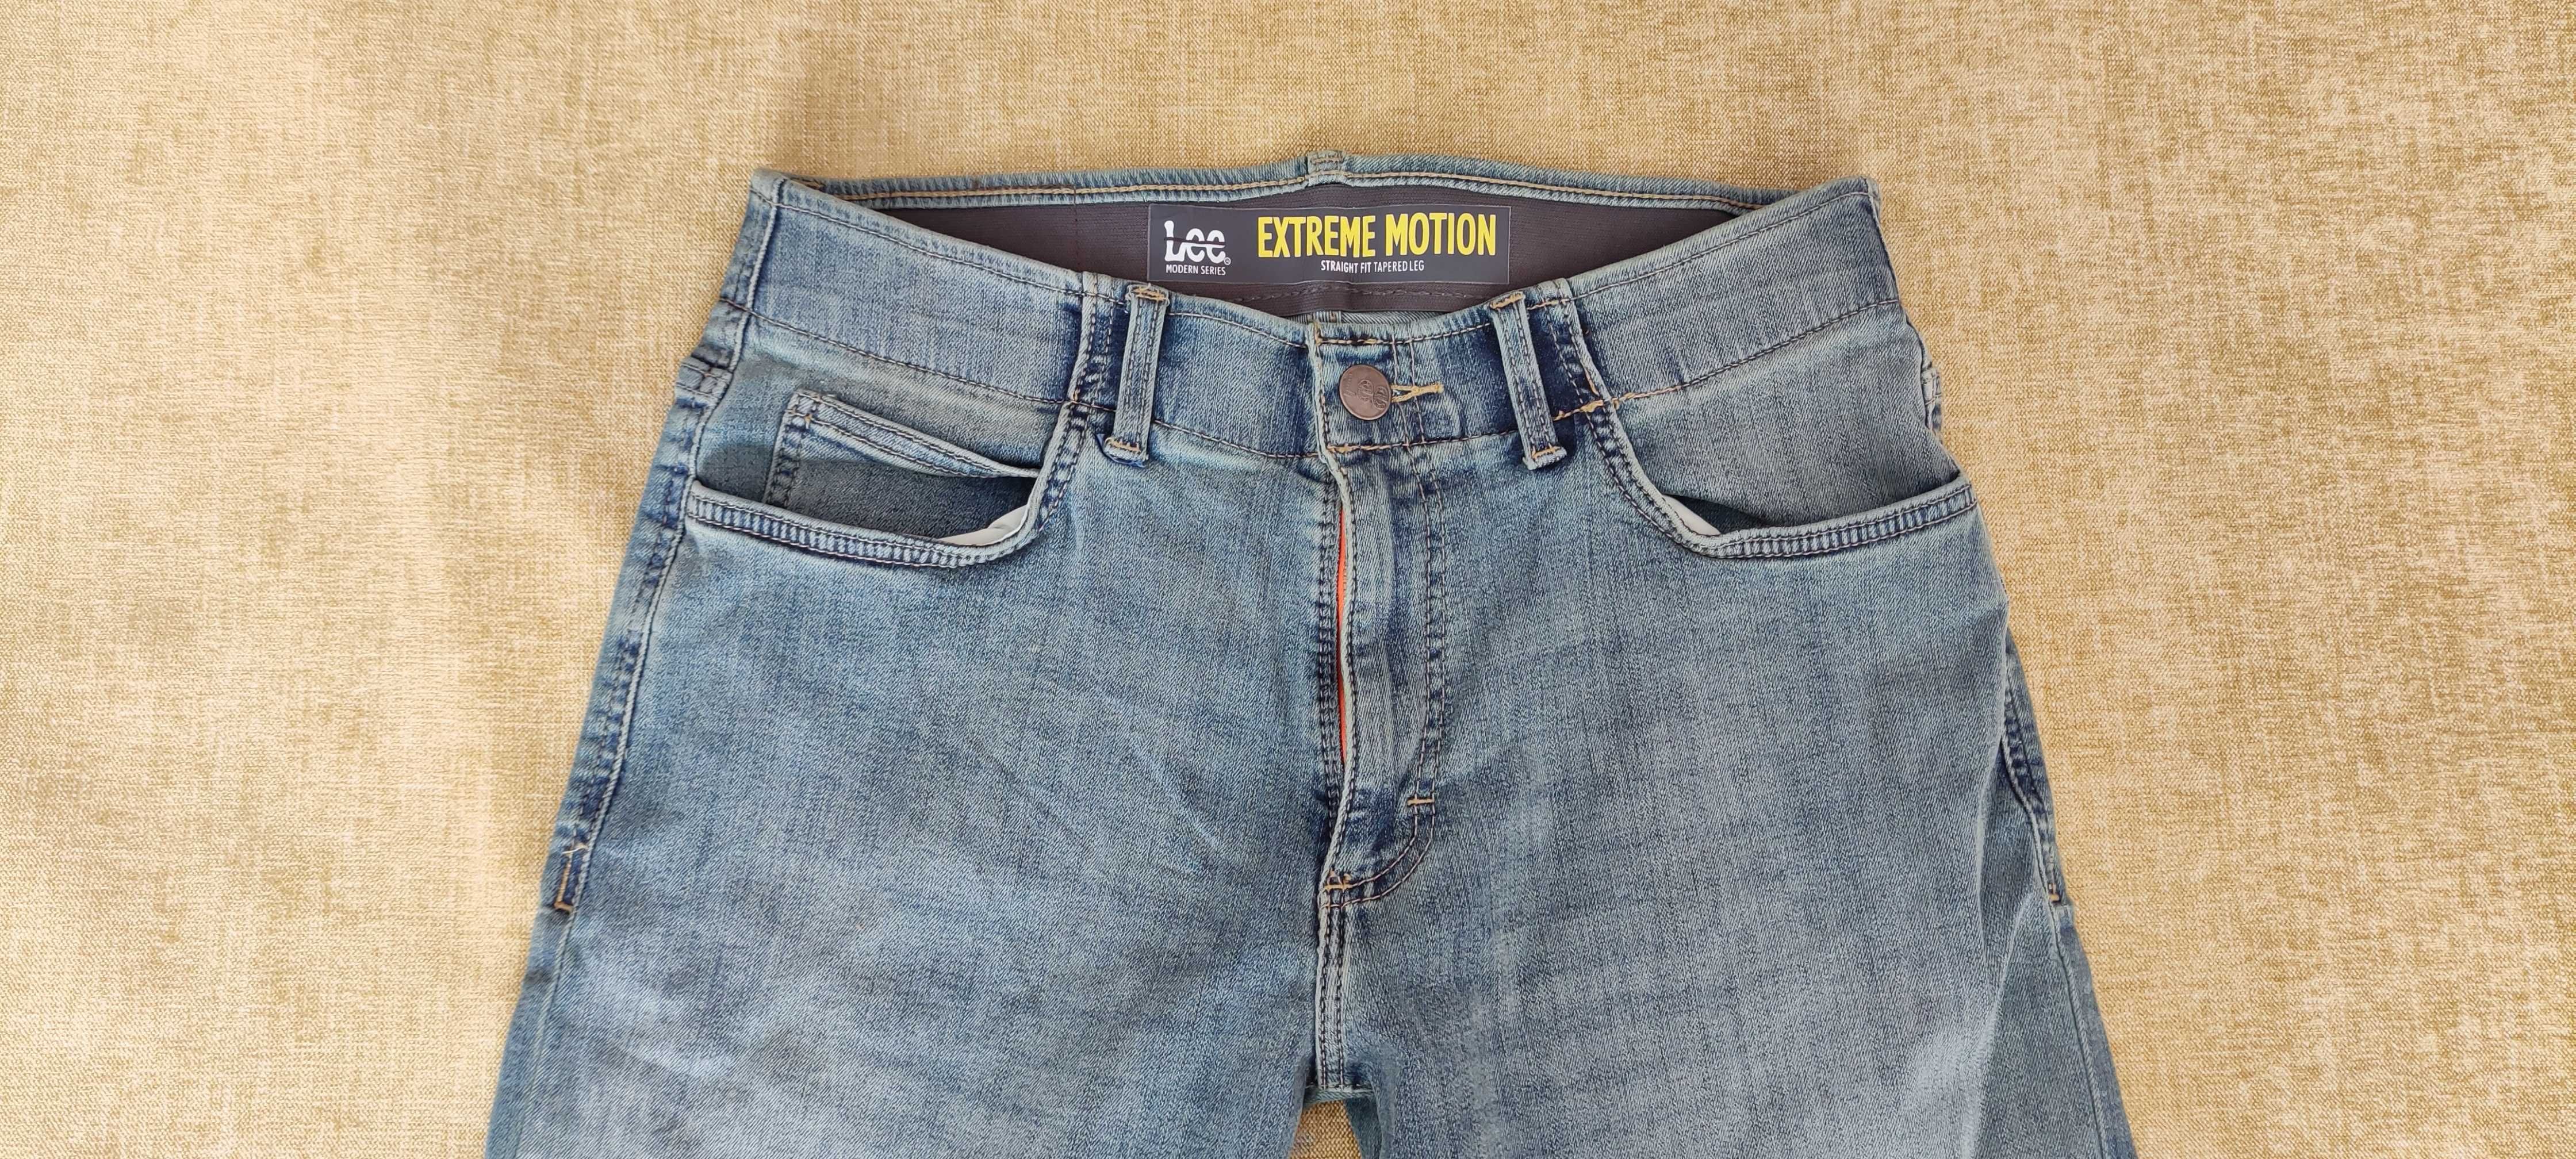 Стретчевые джинсы Lee Extreme Motion W32 L34